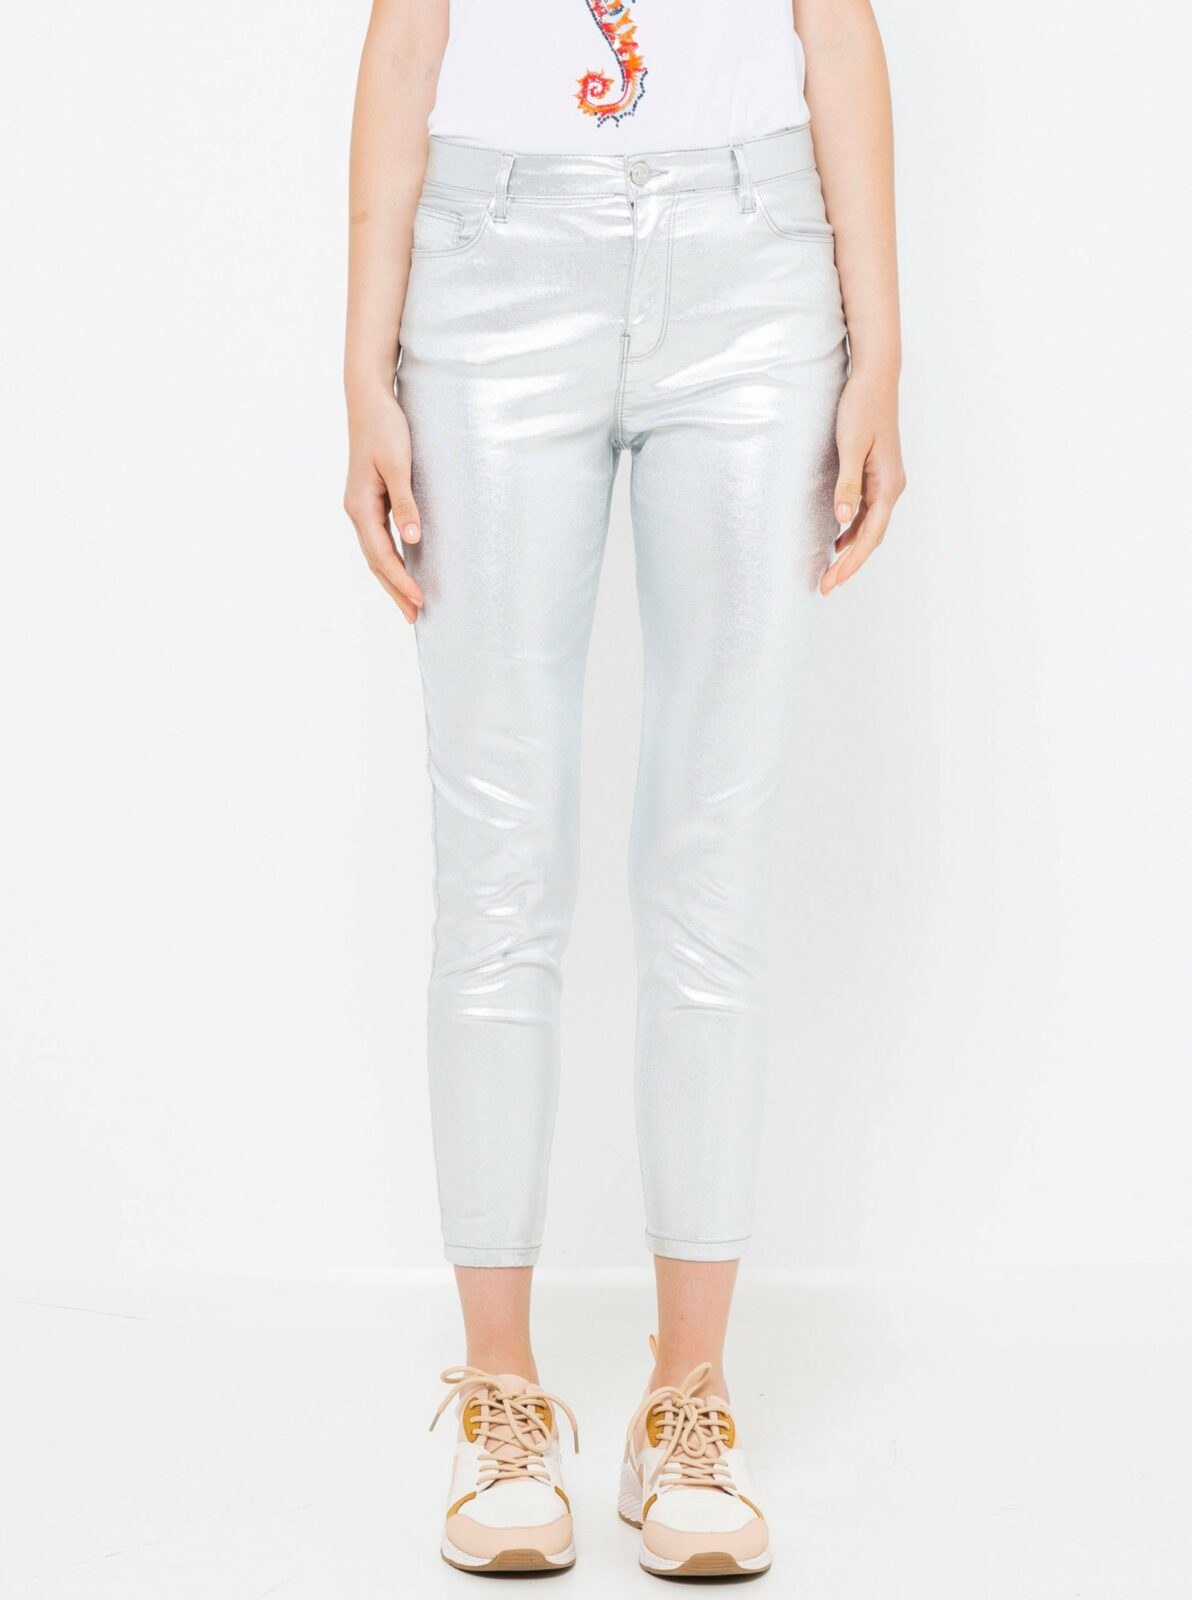 Lesklé zkrácené kalhoty ve stříbrné barvě